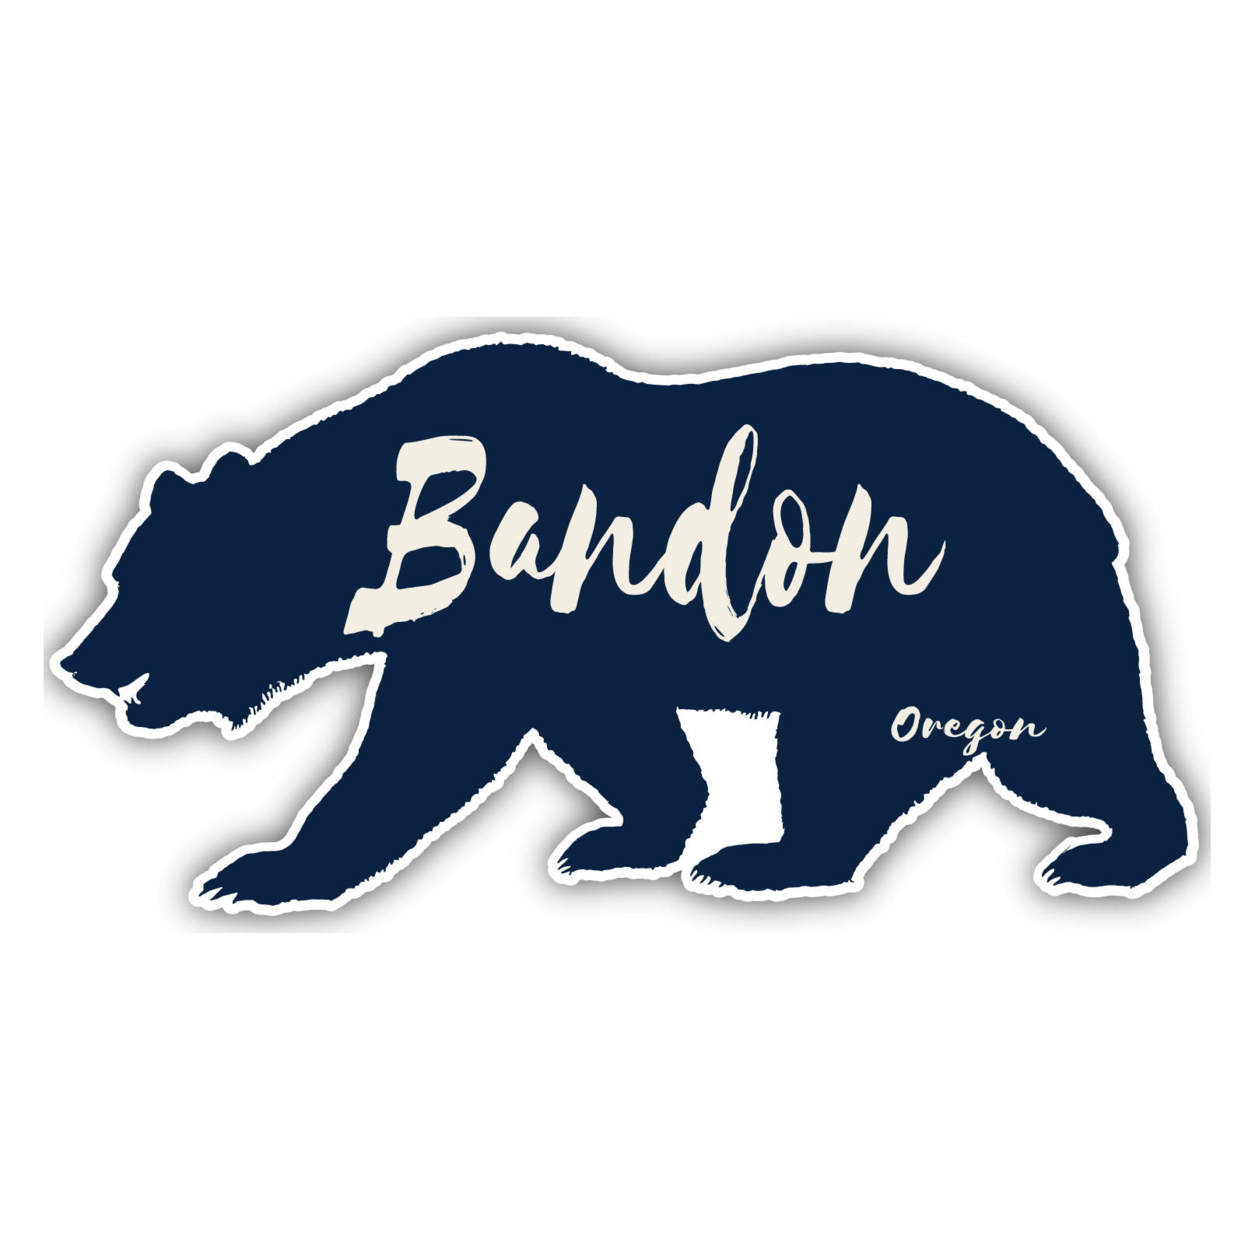 Bandon Oregon Souvenir Decorative Stickers (Choose Theme And Size) - Single Unit, 4-Inch, Tent